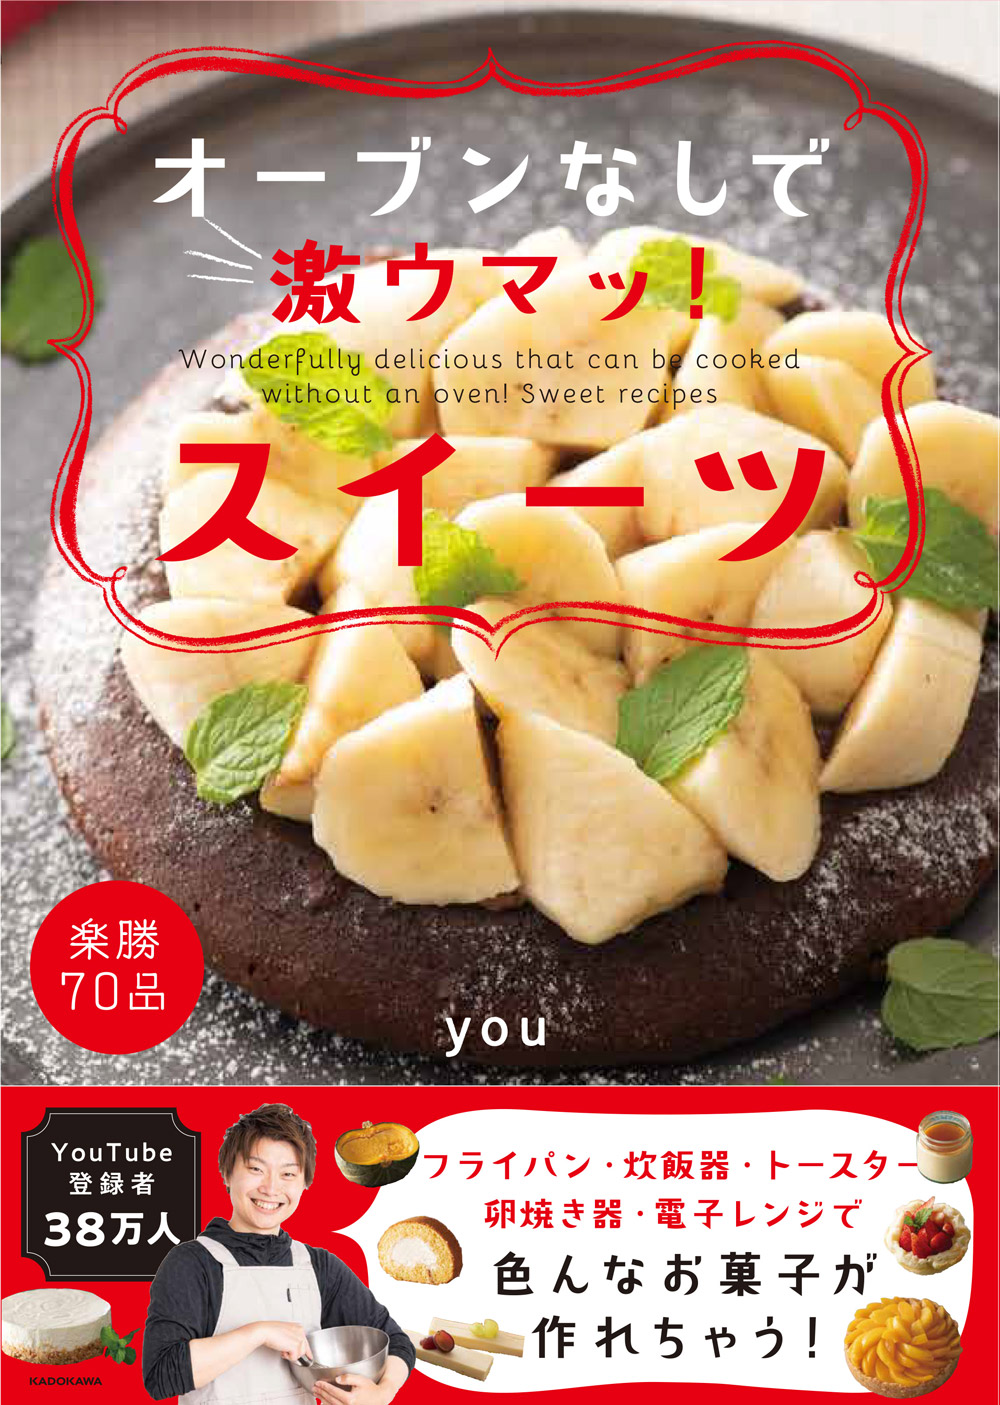 今までなかった オーブンを使わずにできちゃうスイーツレシピ本 オーブンなしで激ウマッ スイーツ 9月16日 水 発売 株式会社kadokawaのプレスリリース